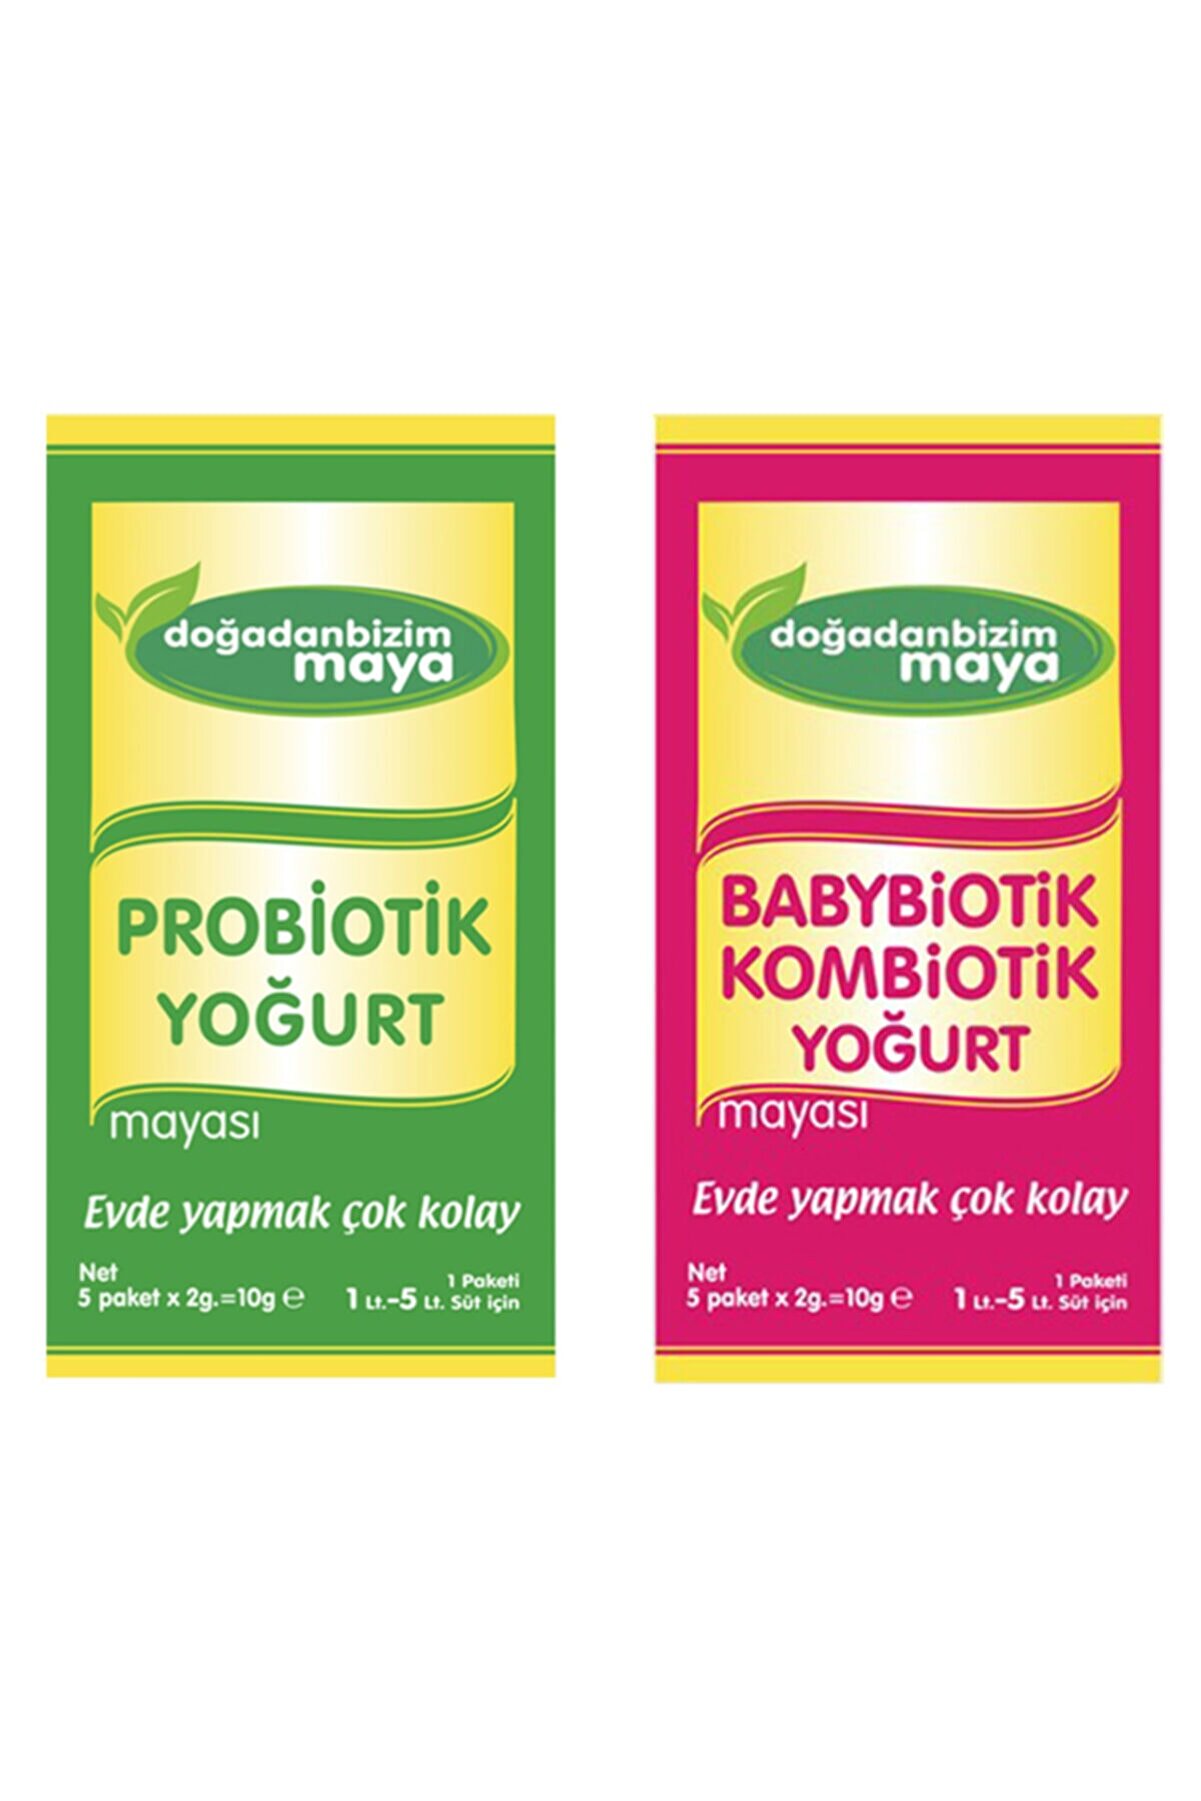 Doğadan Bizim Probiotik Yoğurt Mayası ve Babybiotik Kombiotik Yoğurt Mayası